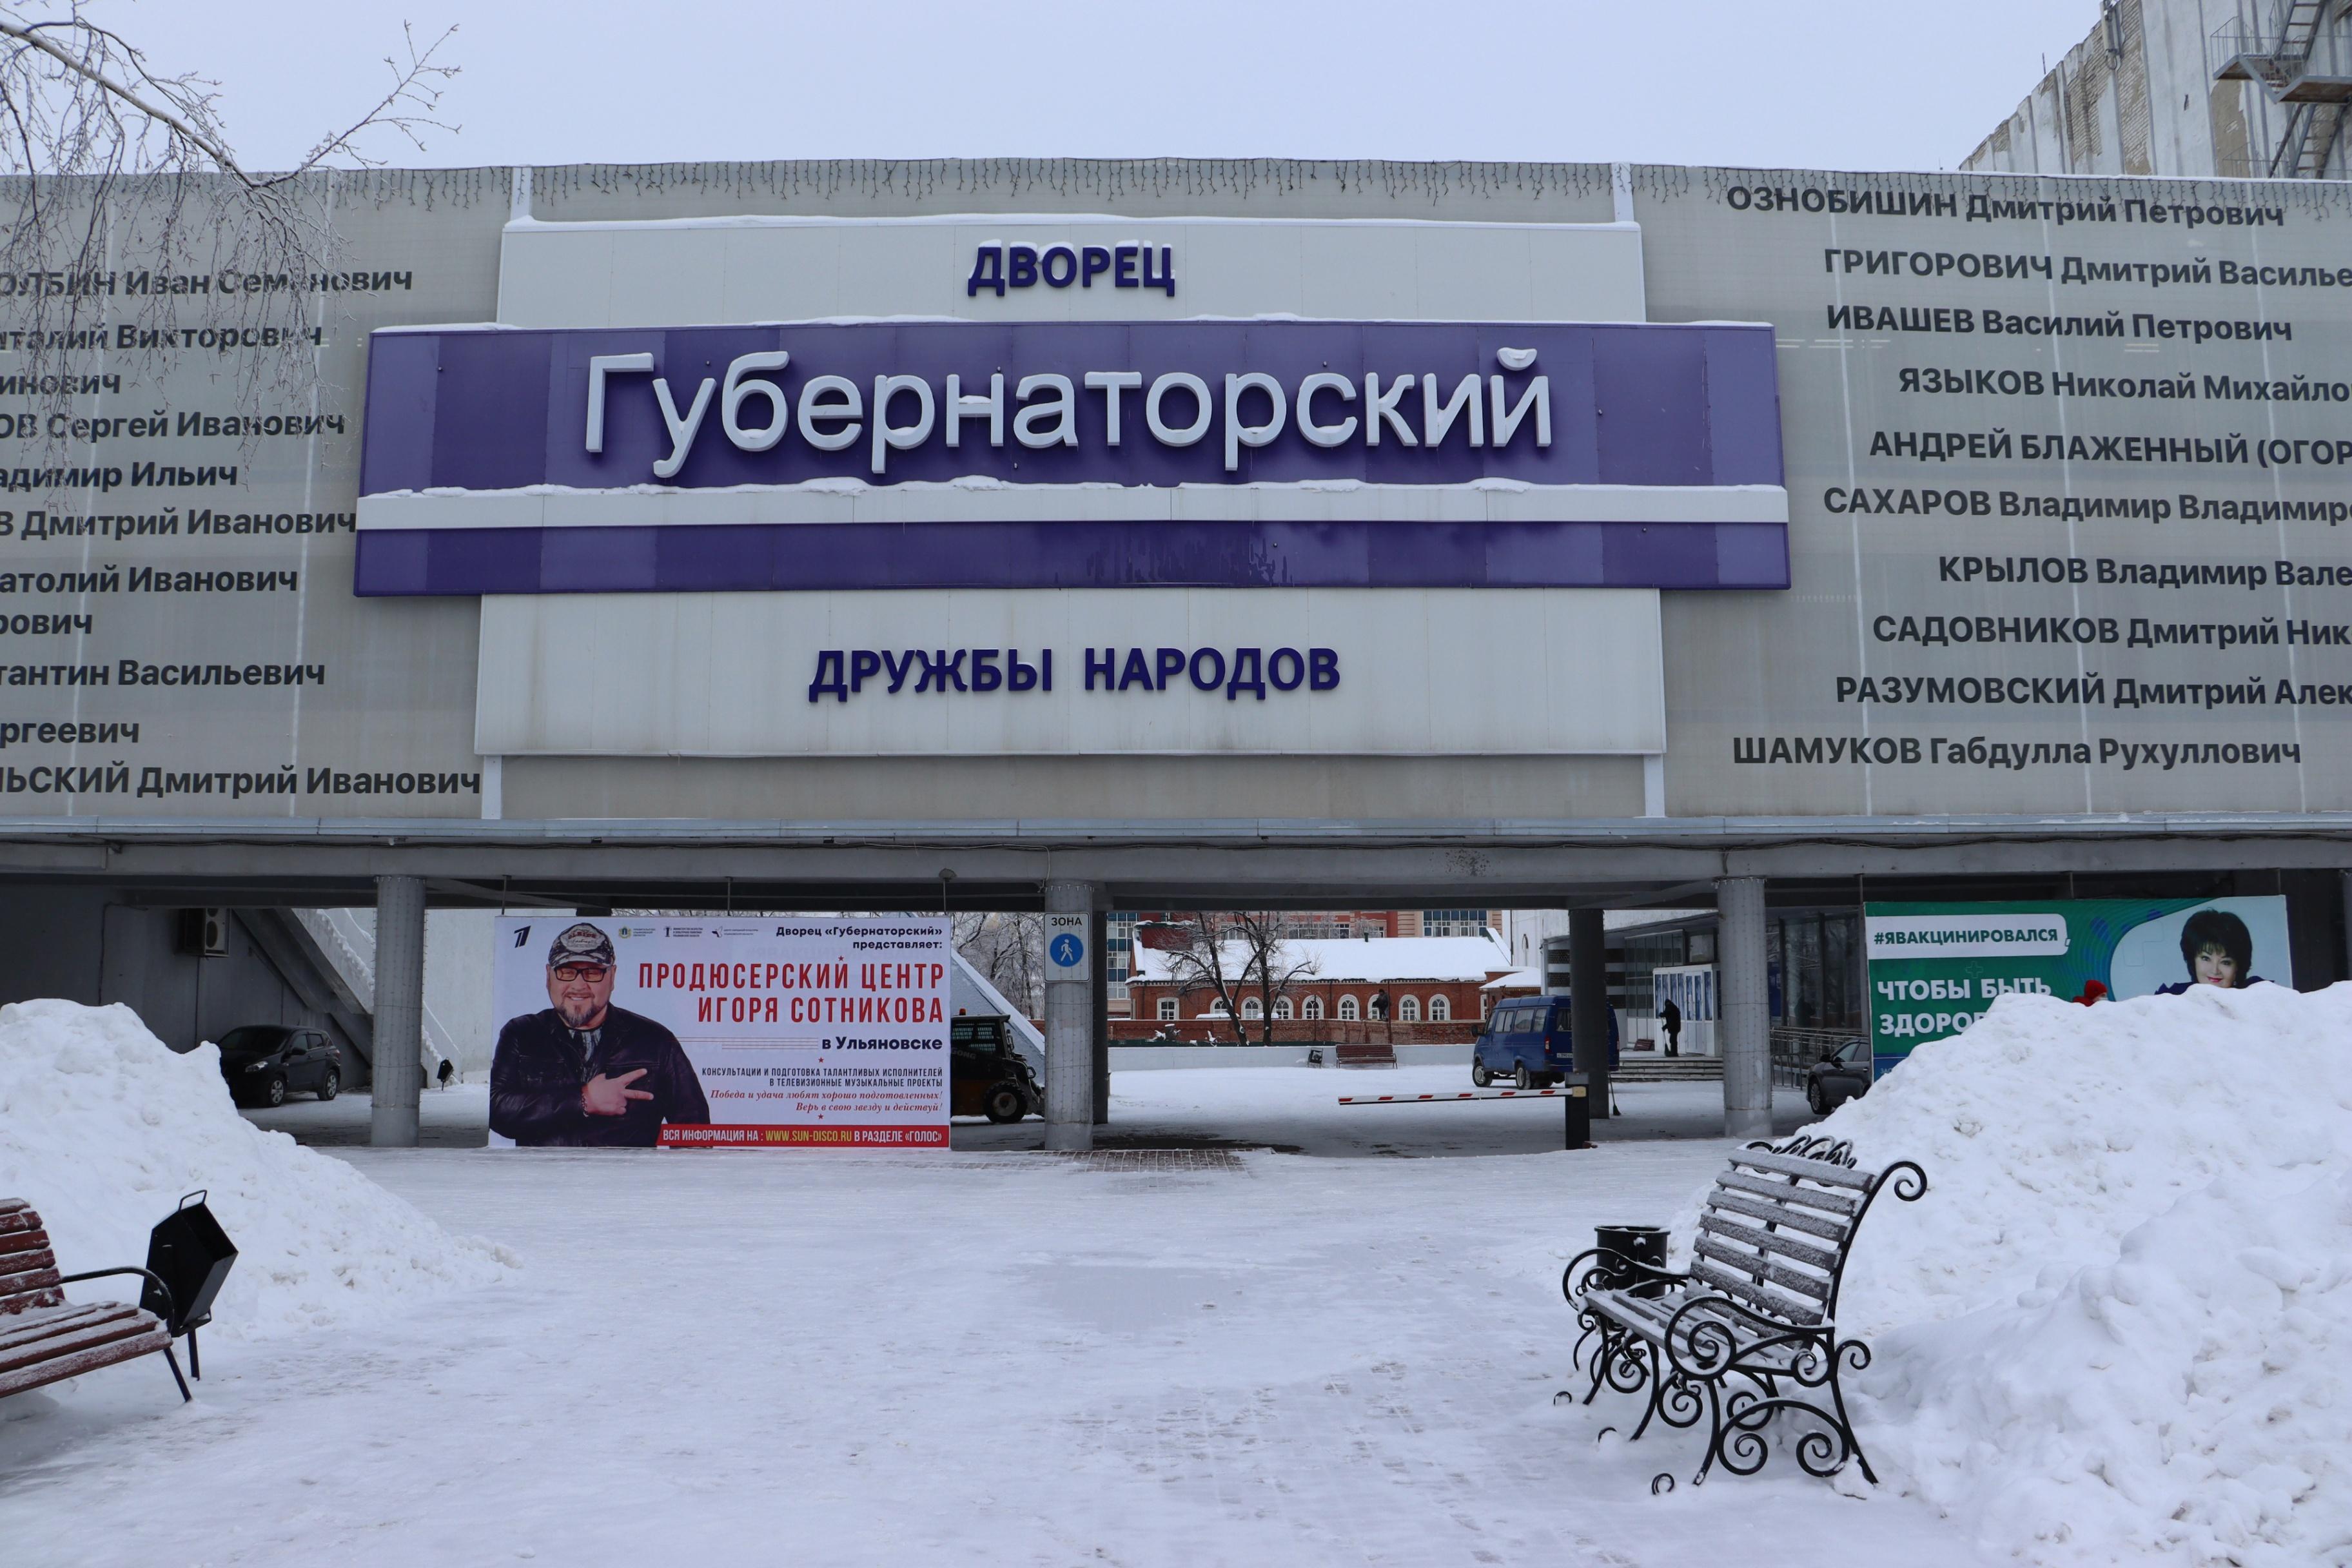 Ульяновск губернаторский купить билеты